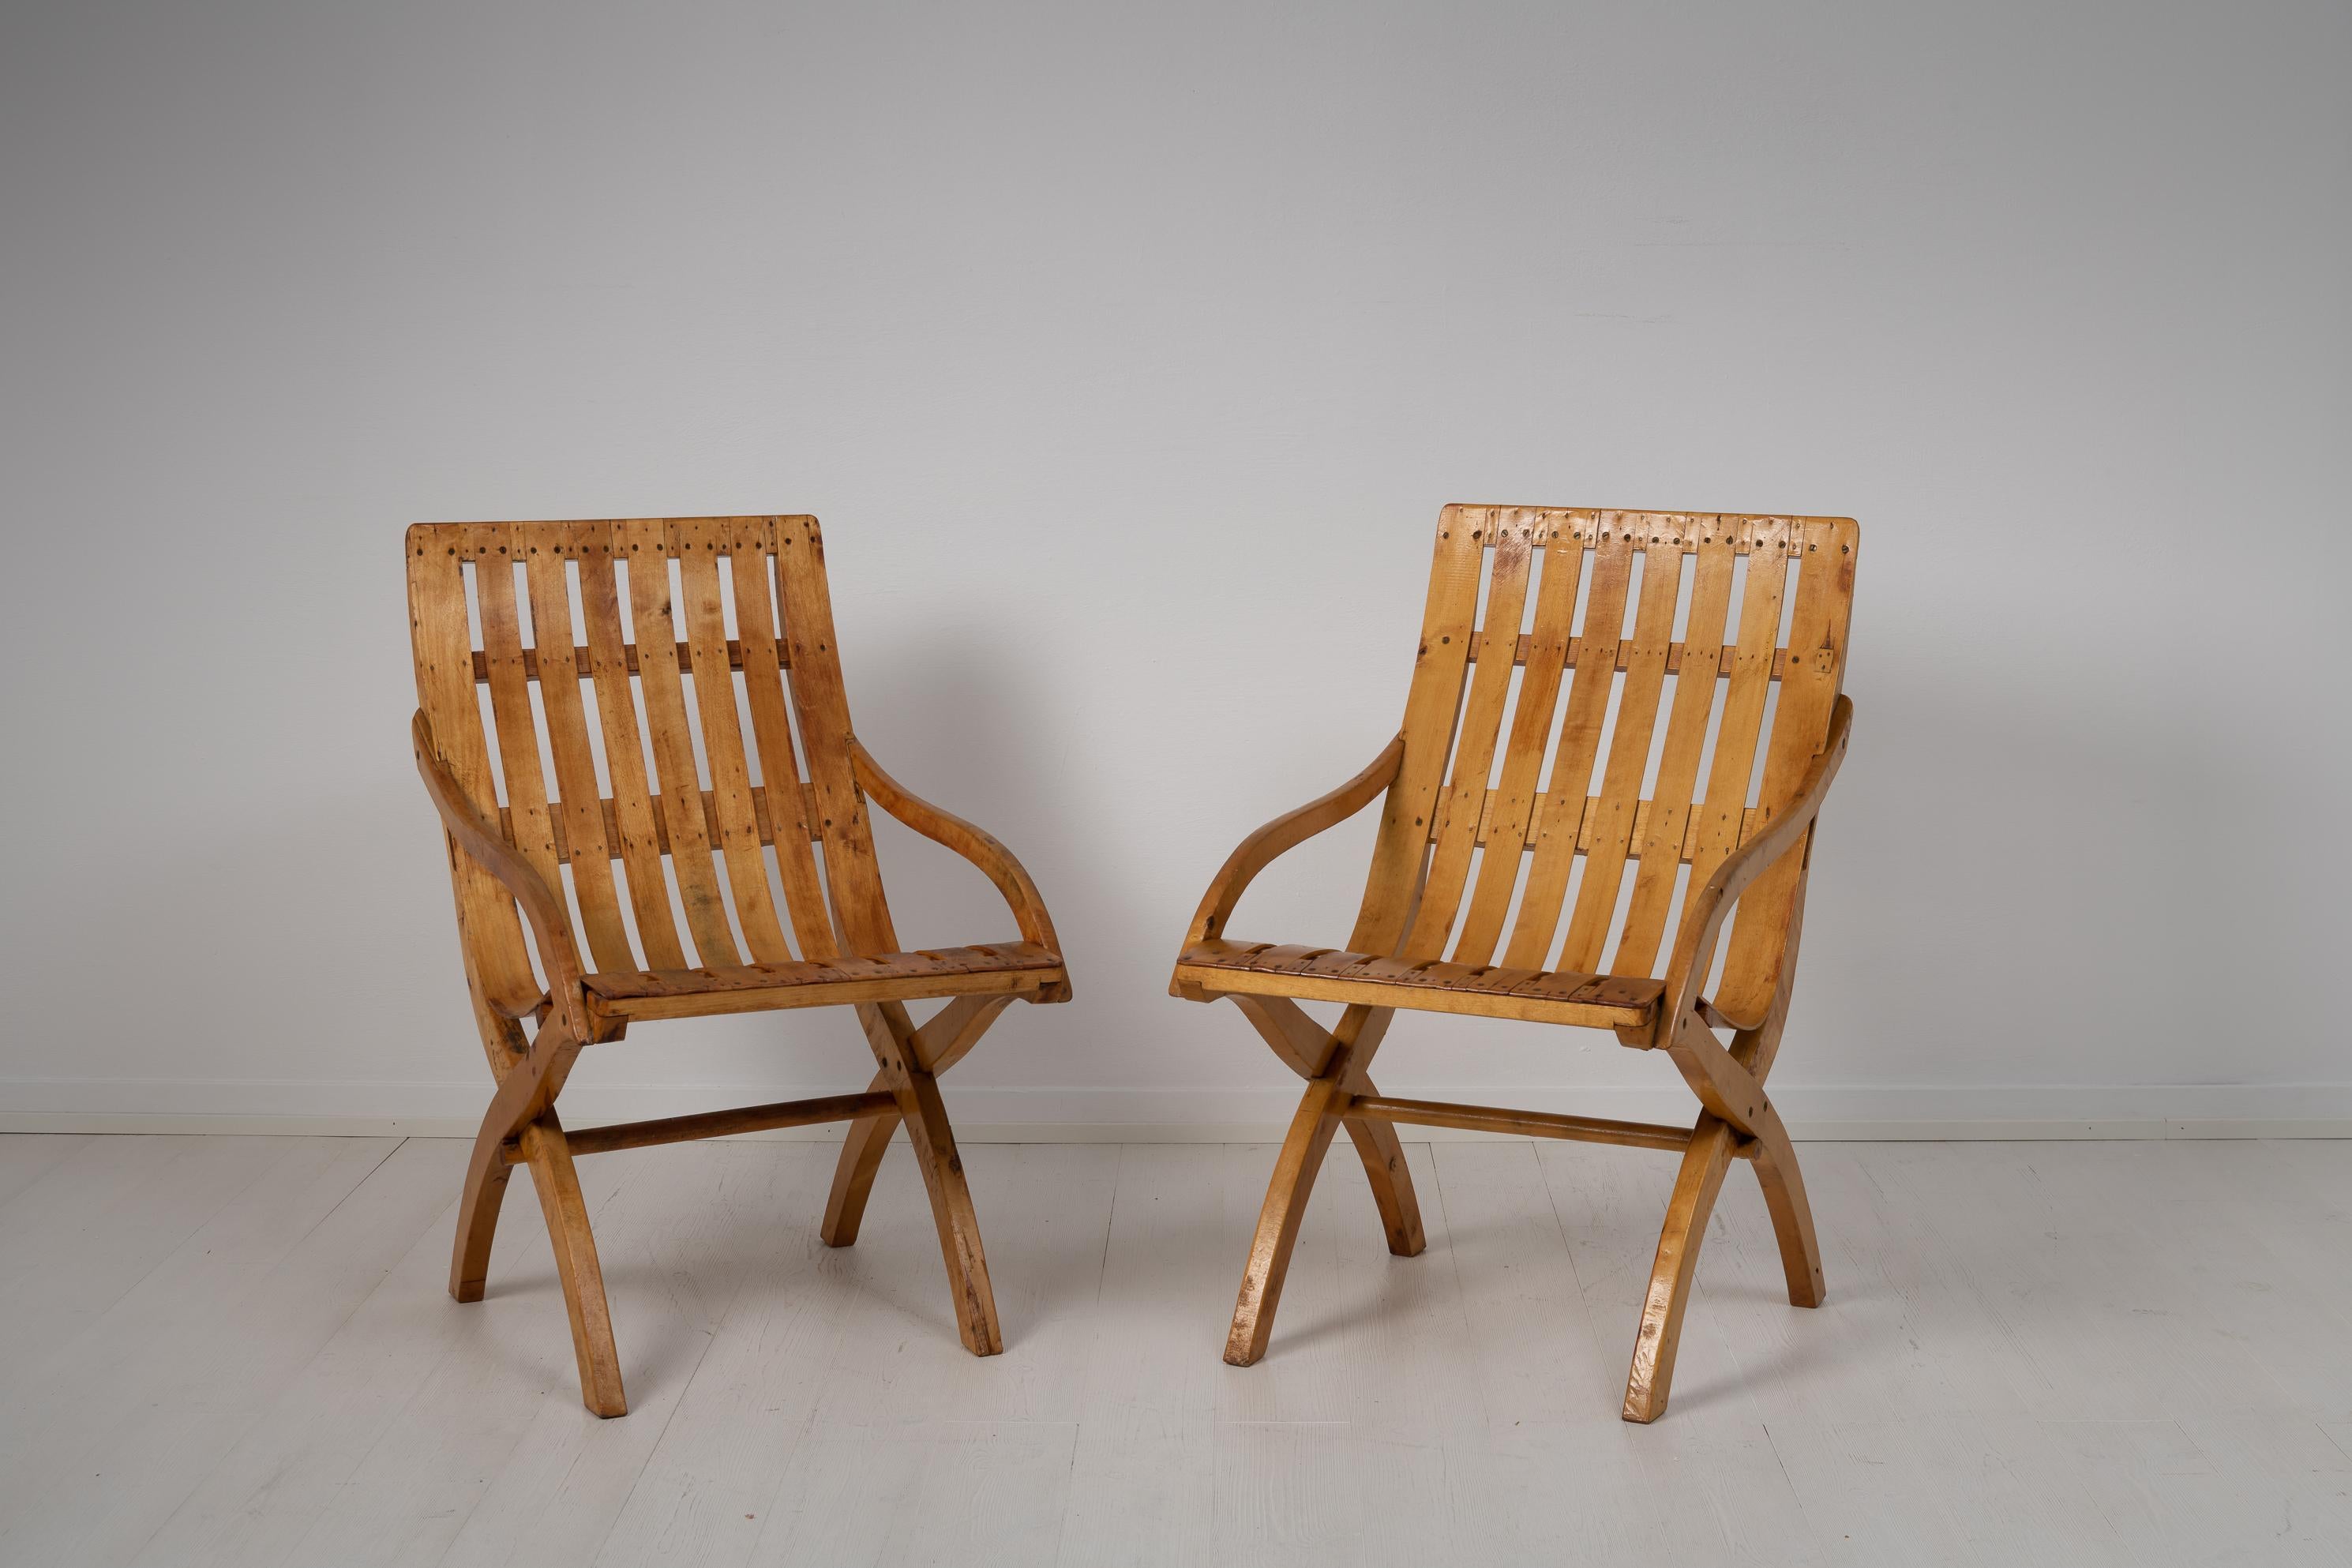 Sessel aus nacktem Kiefern- und Birkenholz aus den 1930er Jahren, der Zeit der schwedischen Gnade. Die Stühle sind aus blankem Holz und weisen die typischen Merkmale des schwedischen Designs dieser Zeit auf. Sie zeichnen sich durch ausgewogenes